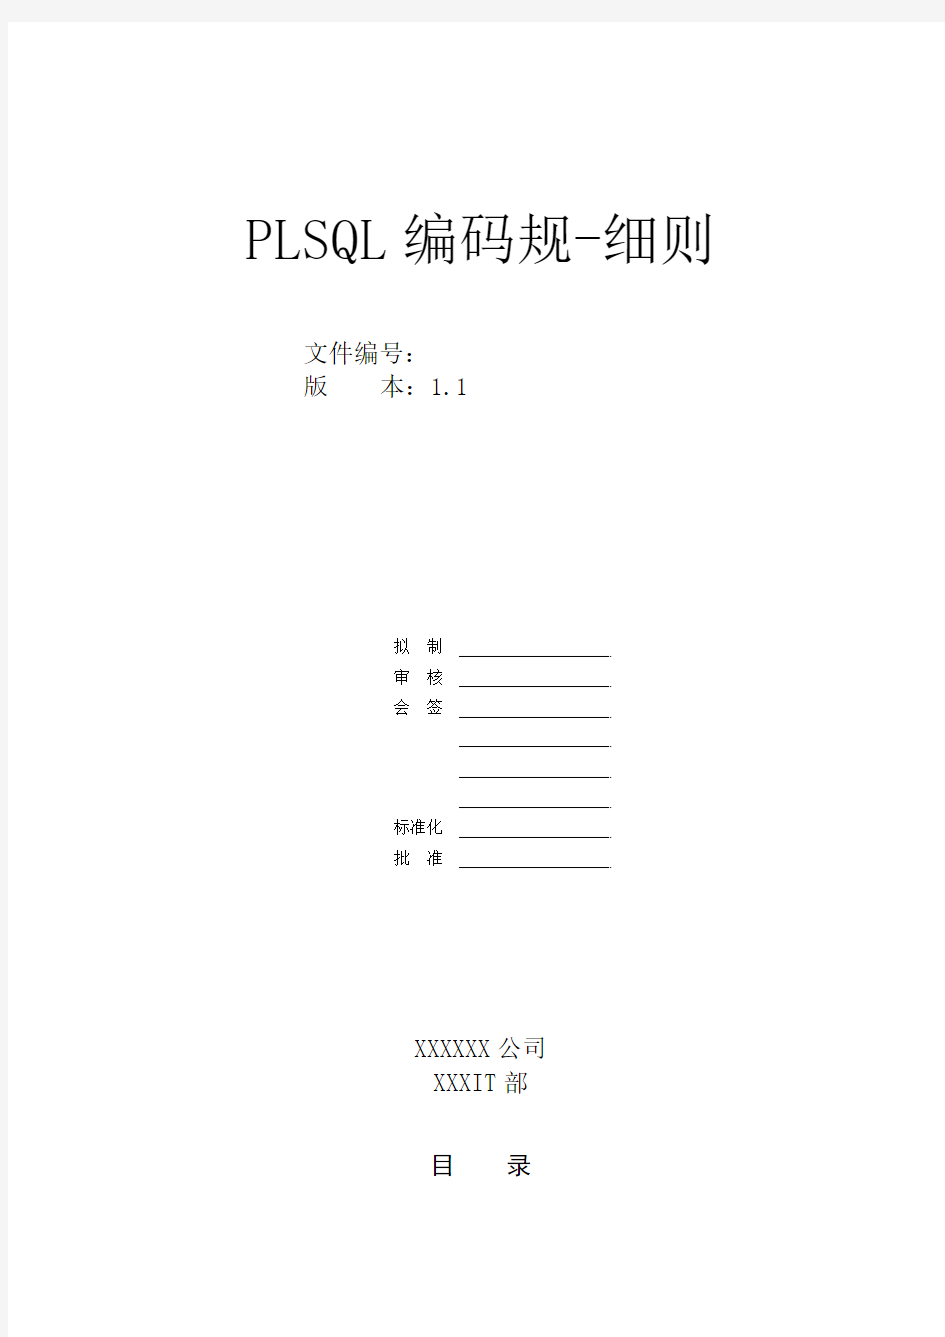 PLSQL编码规范-细则